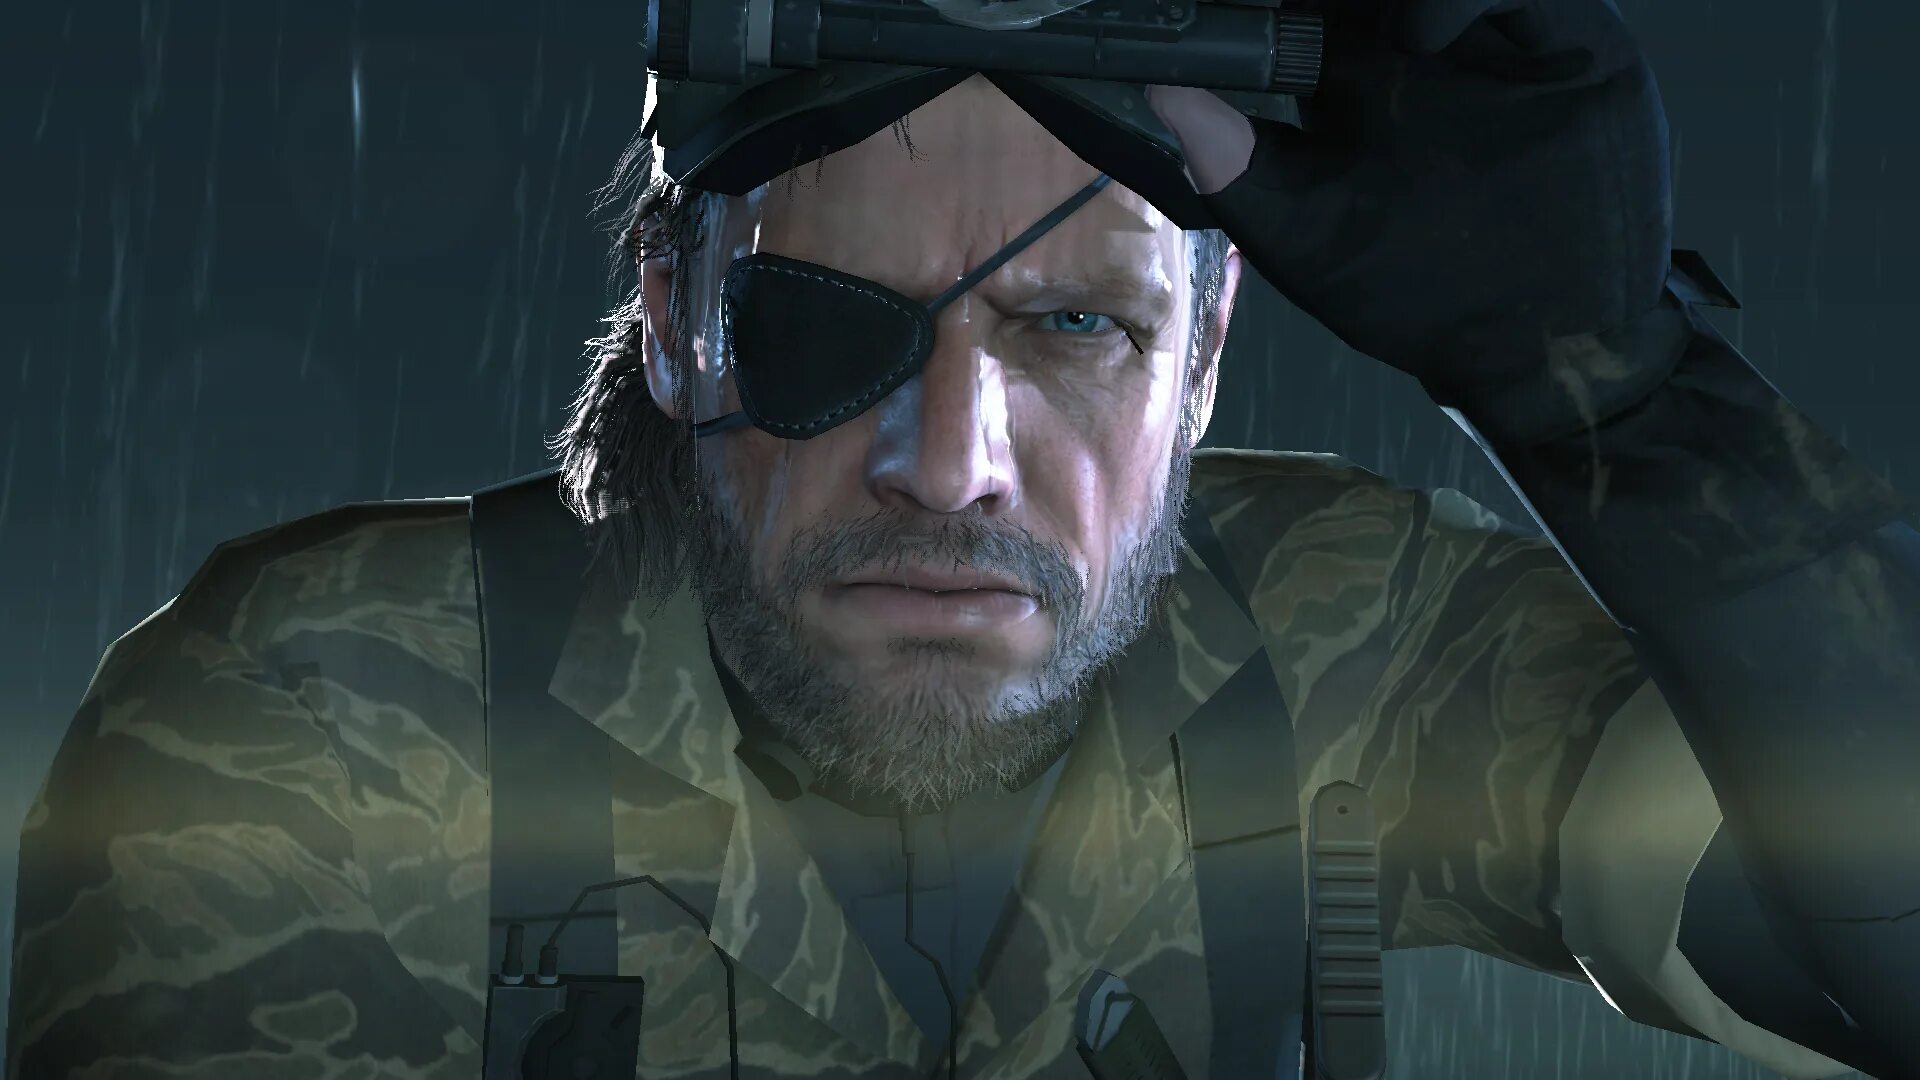 Биг босс Metal Gear 5 ground Zeroes. MGS 5 ground Zeroes Снейк. Солид Снейк. Metal Gear Solid 6. Биг босс биография